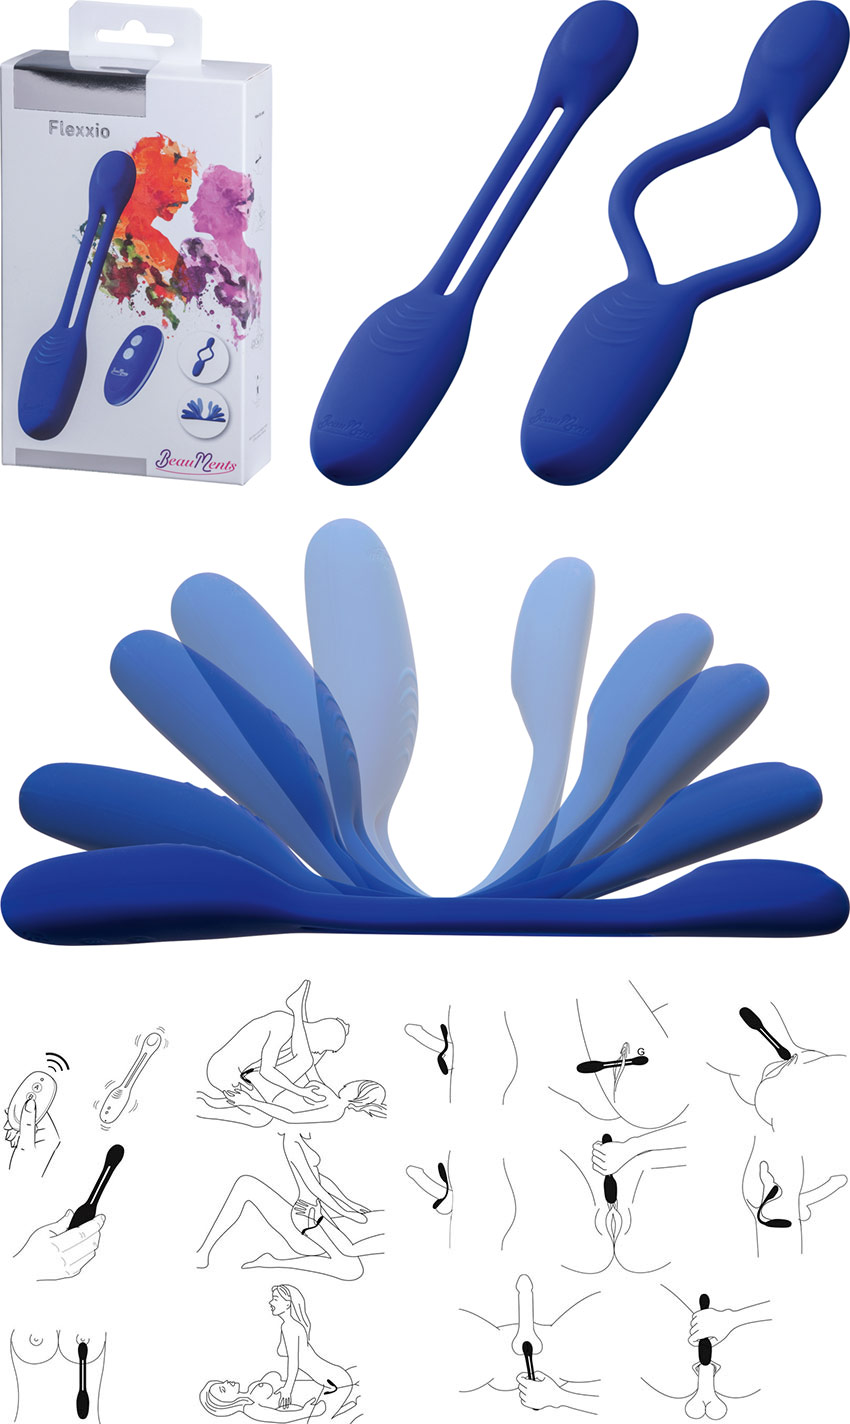 BeauMents Flexxio Vibrator für Paare - Blau